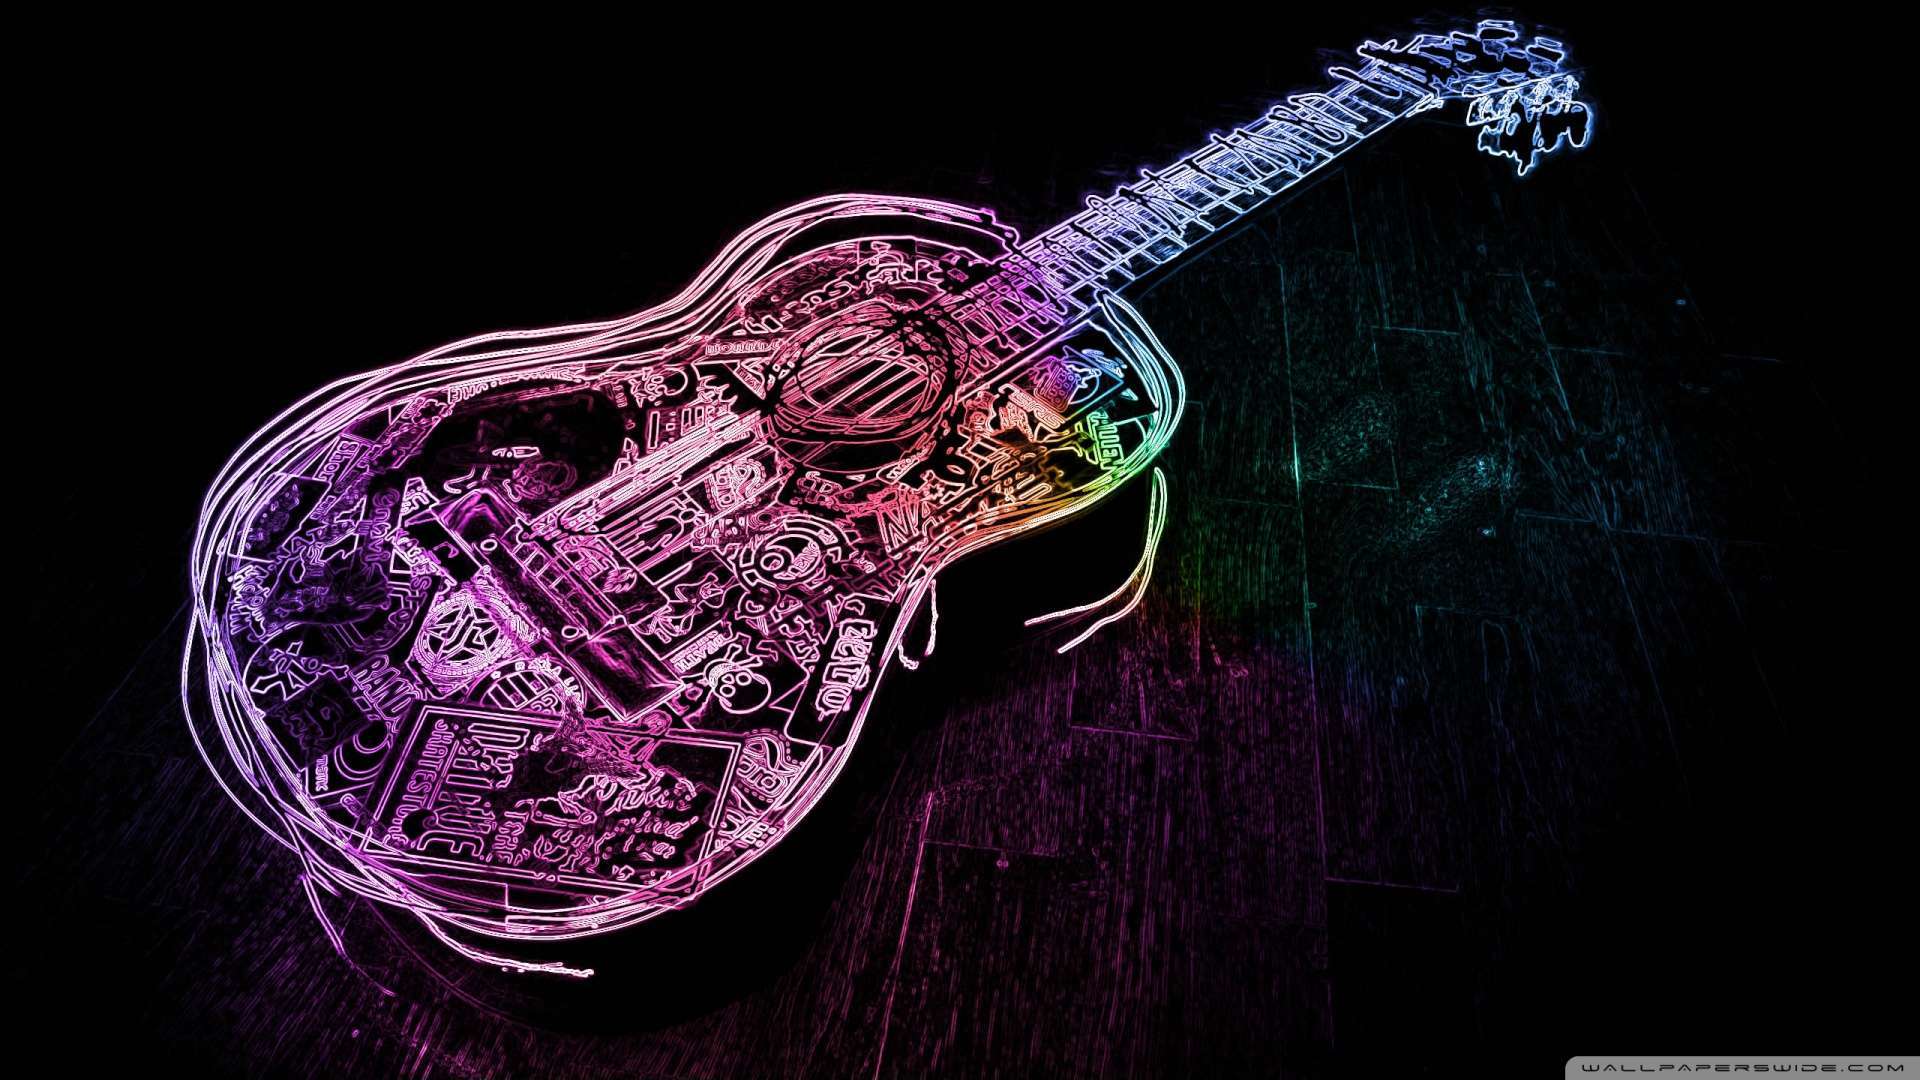 1080P Guitar  Wallpaper  WallpaperSafari